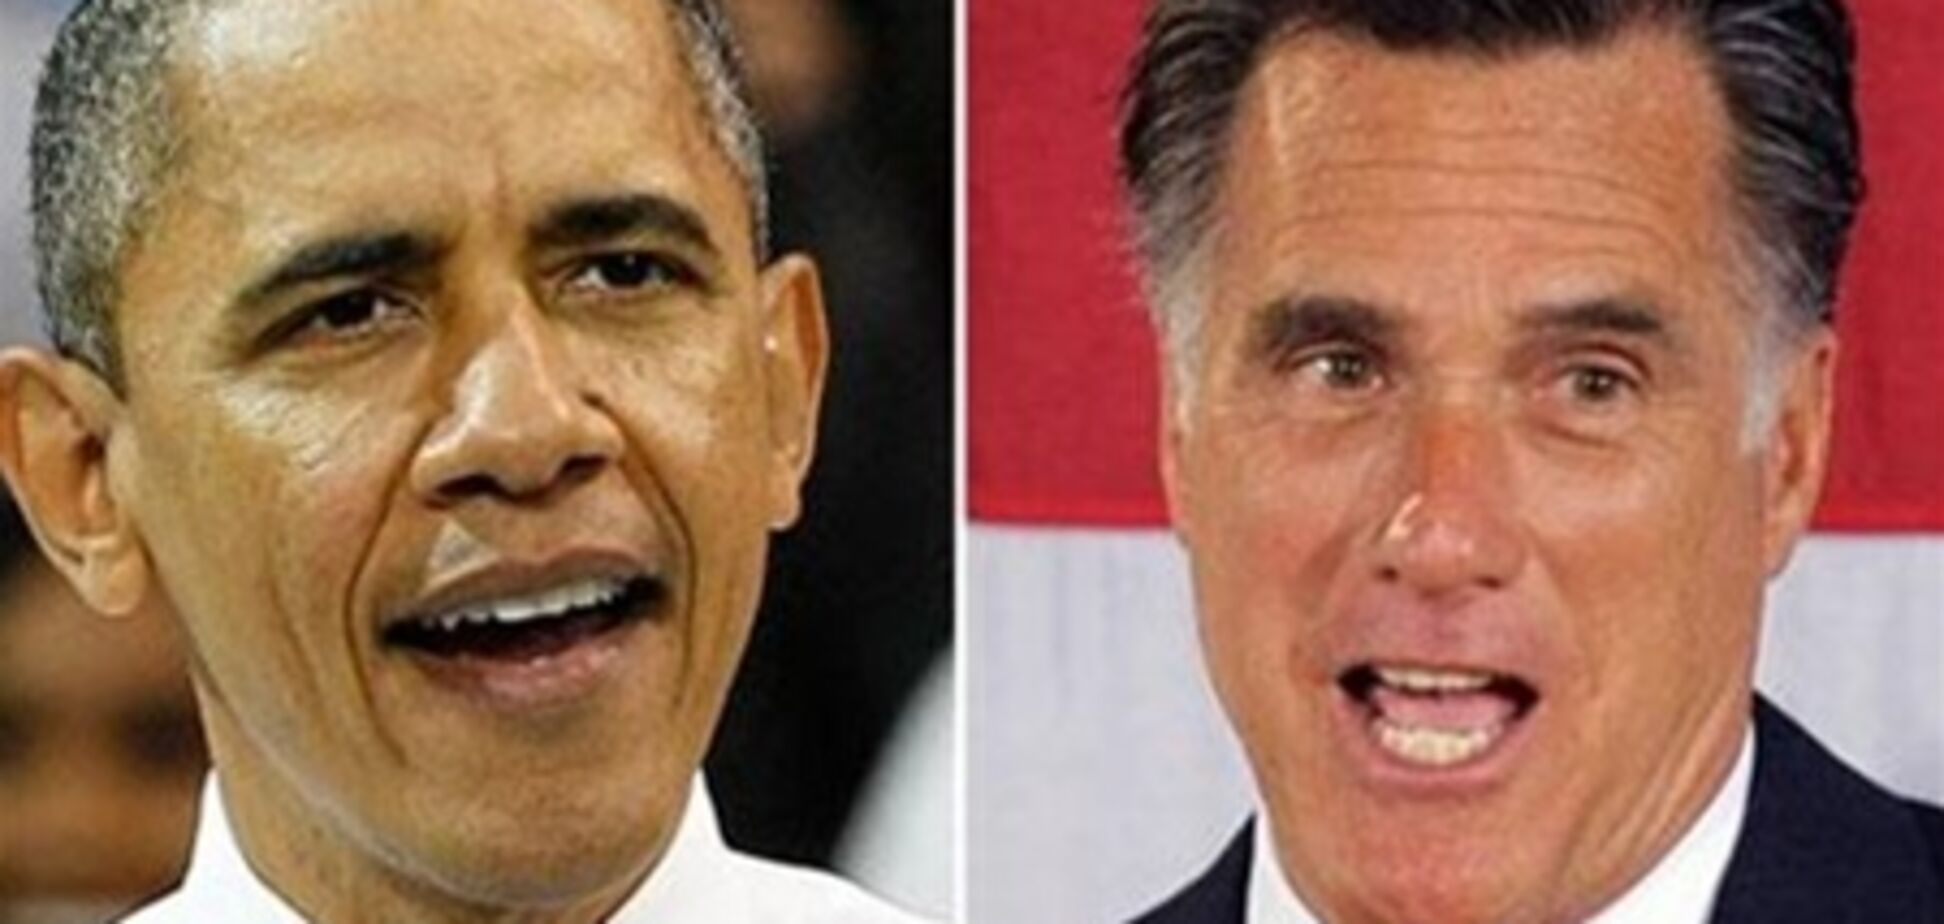 Ромни догнал Обаму по числу голосов потенциальных избирателей